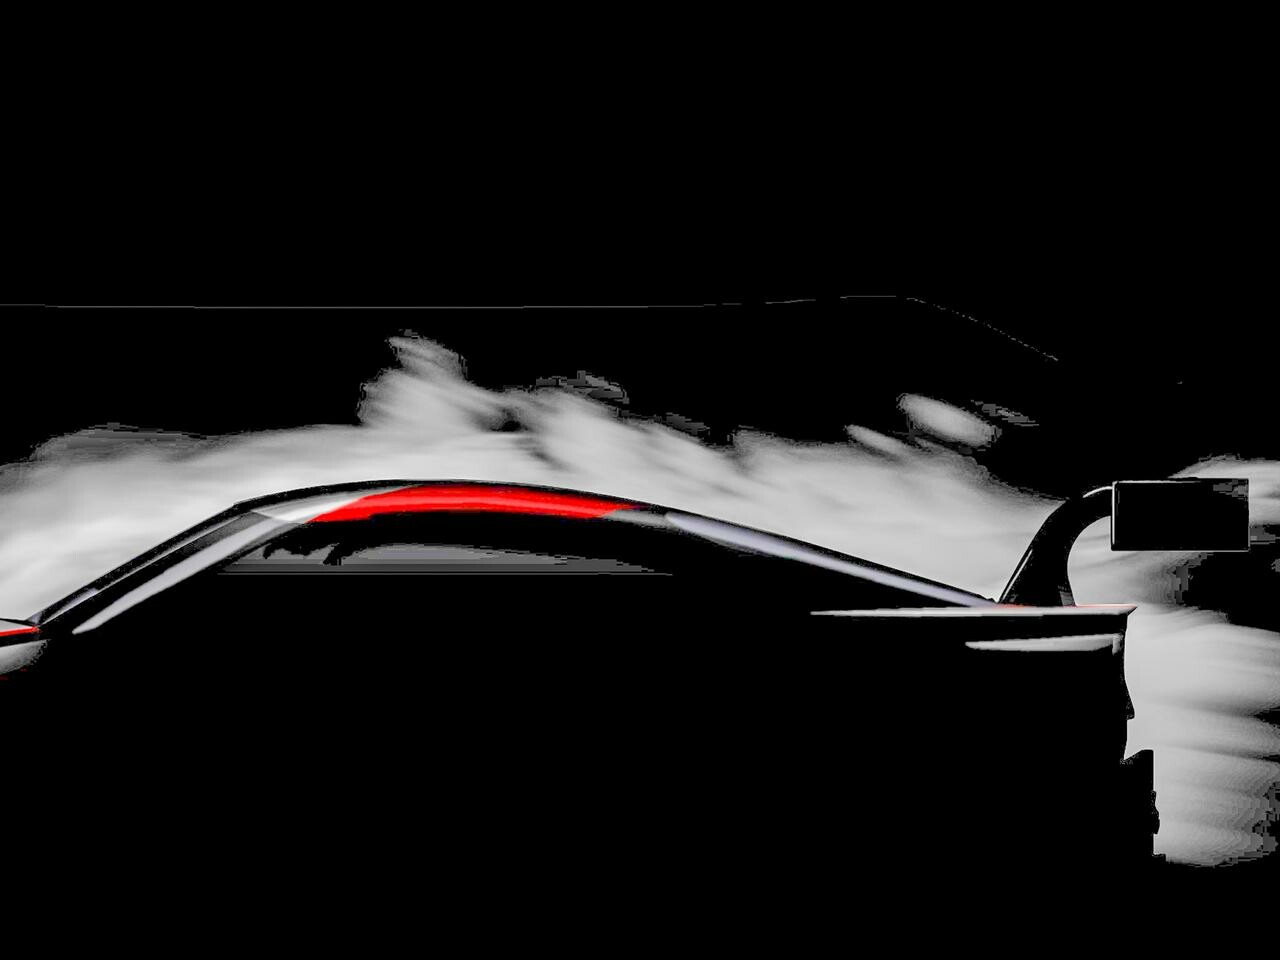 【ニュース】トヨタ新型スープラのスーパーGT仕様コンセプトをオートサロン2019に出展